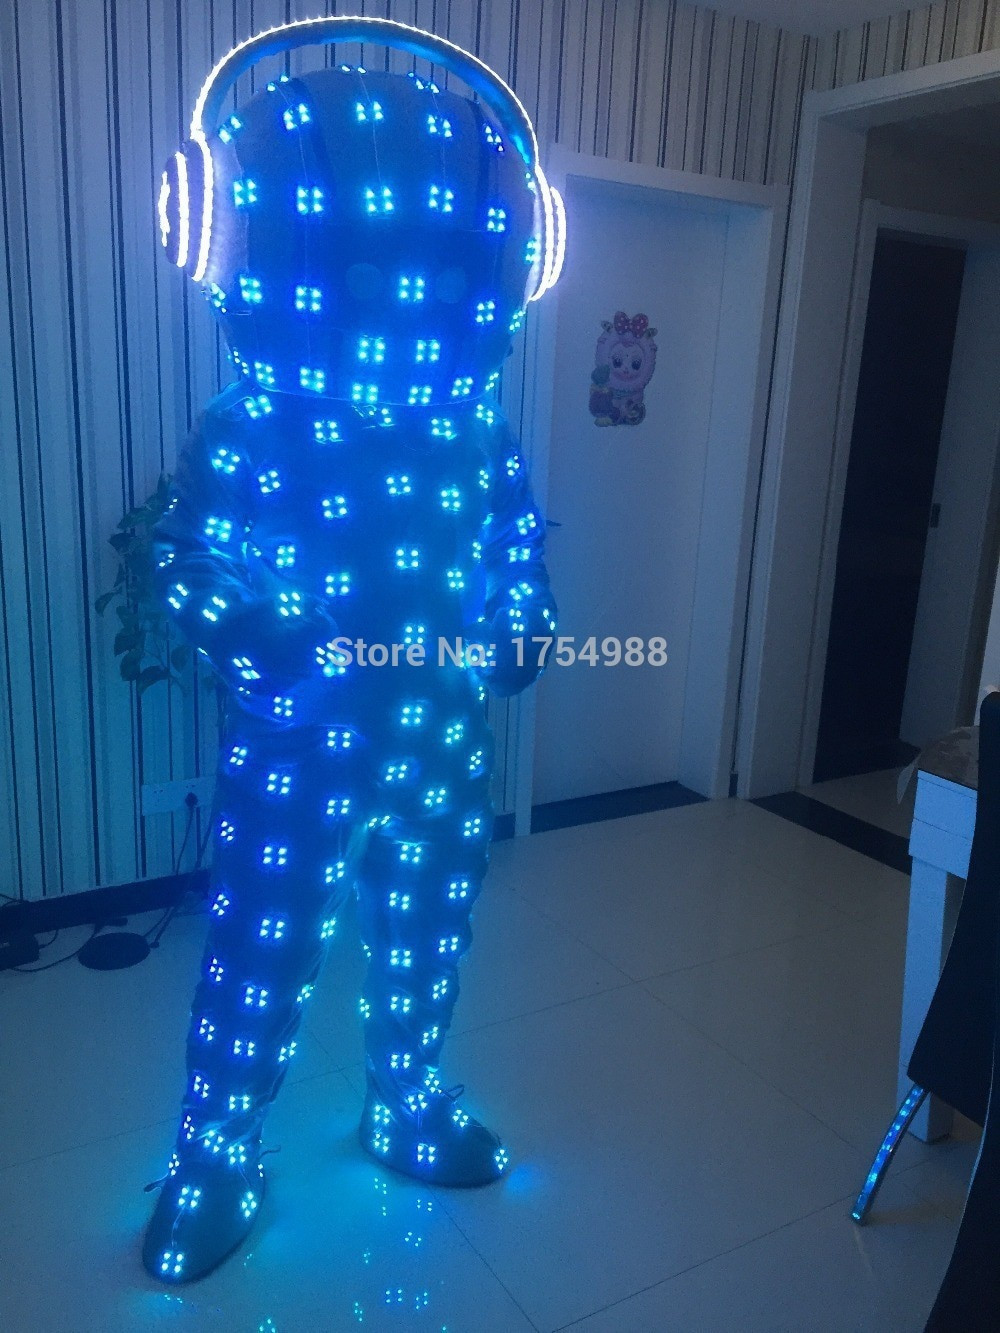 Led Costume DIY
 LED costume LED Luminous costume Illuminated Suit for